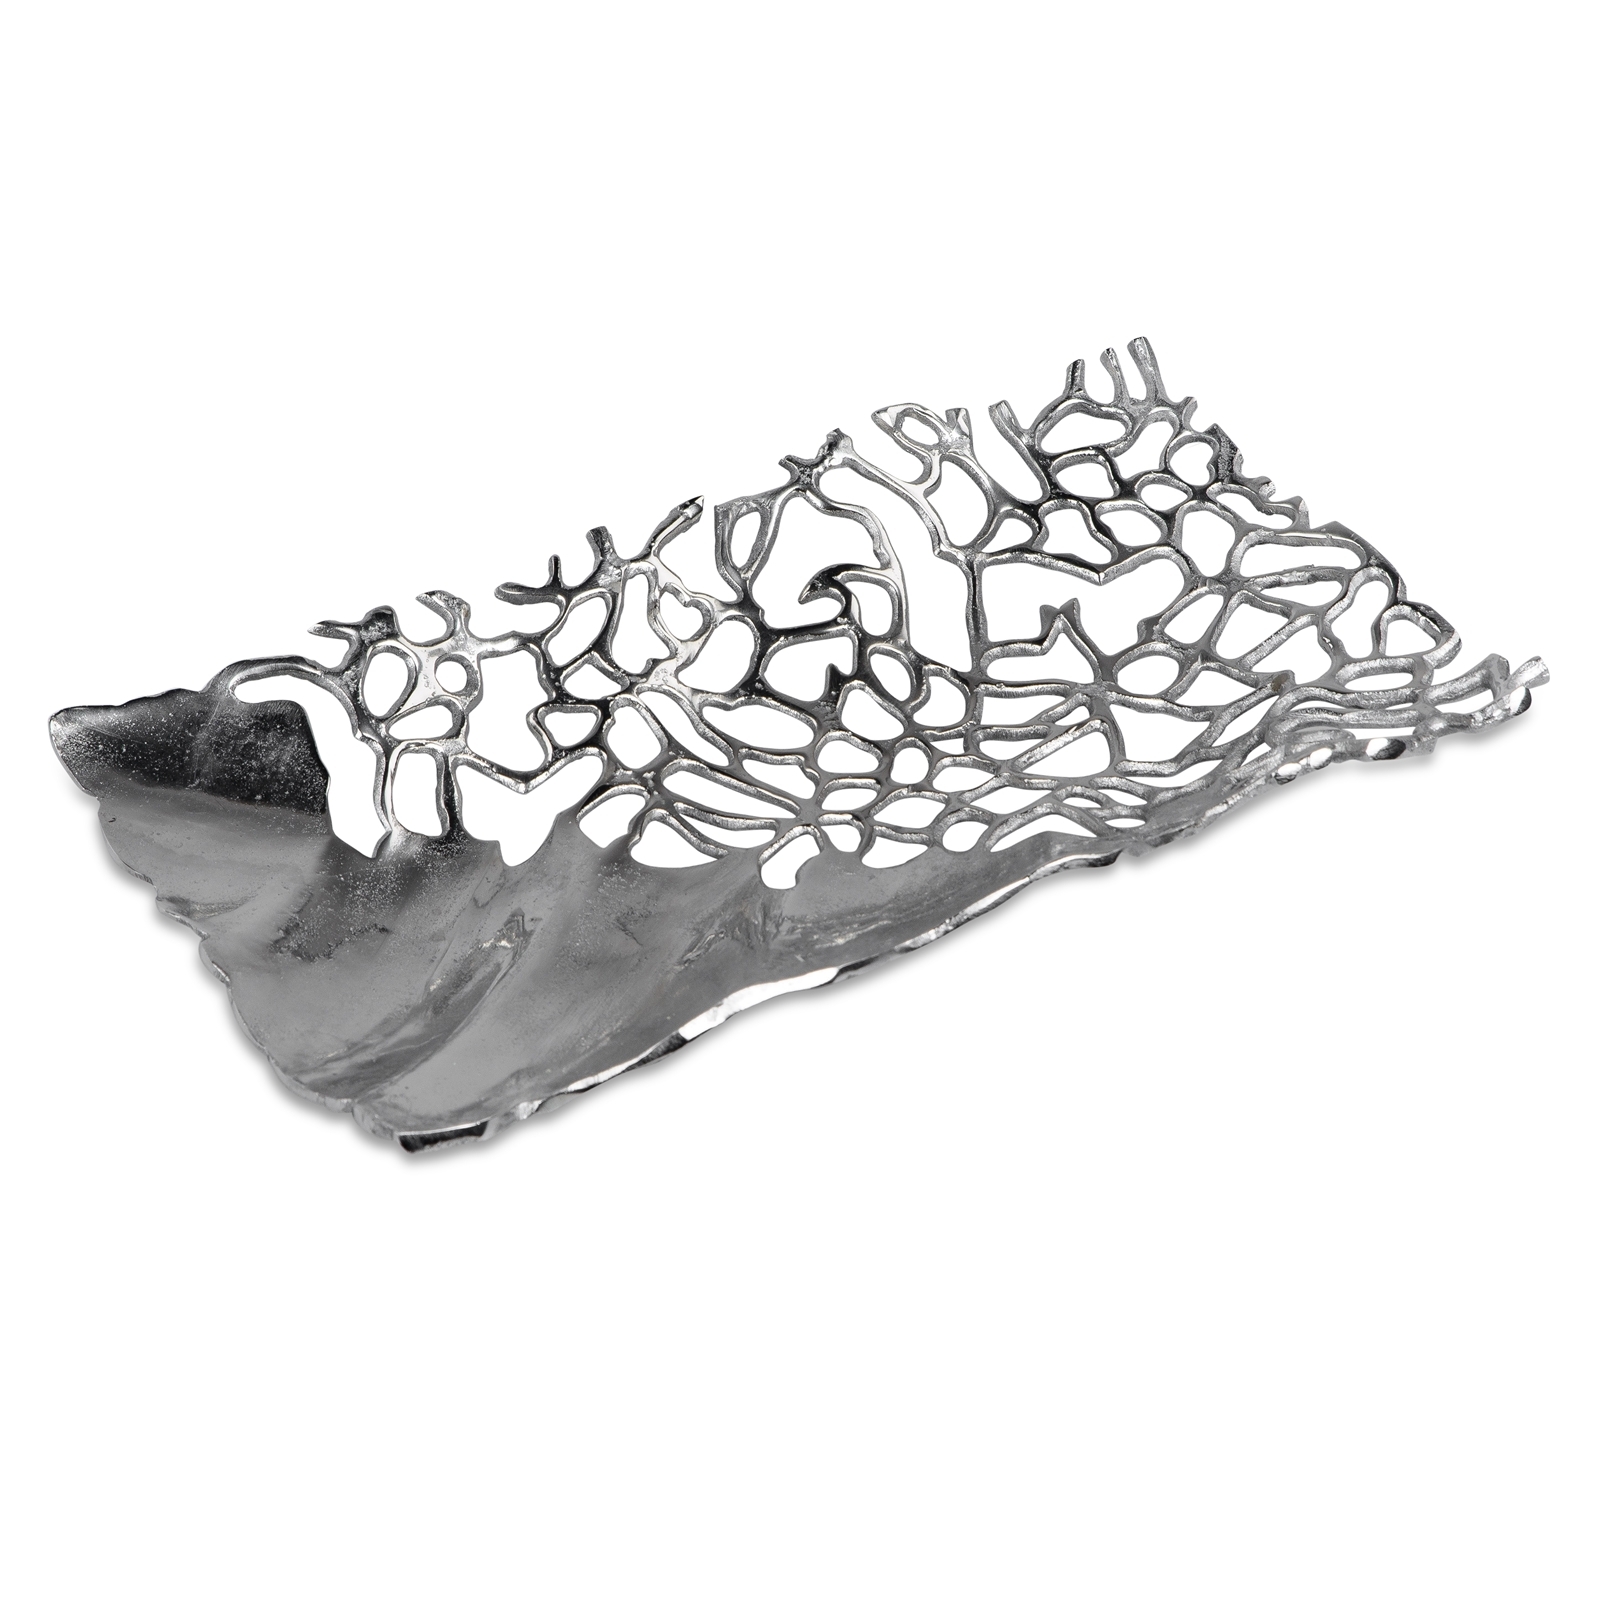 Koralle aus Aluminium 623683 Schale Eckig 38x22cm Alu